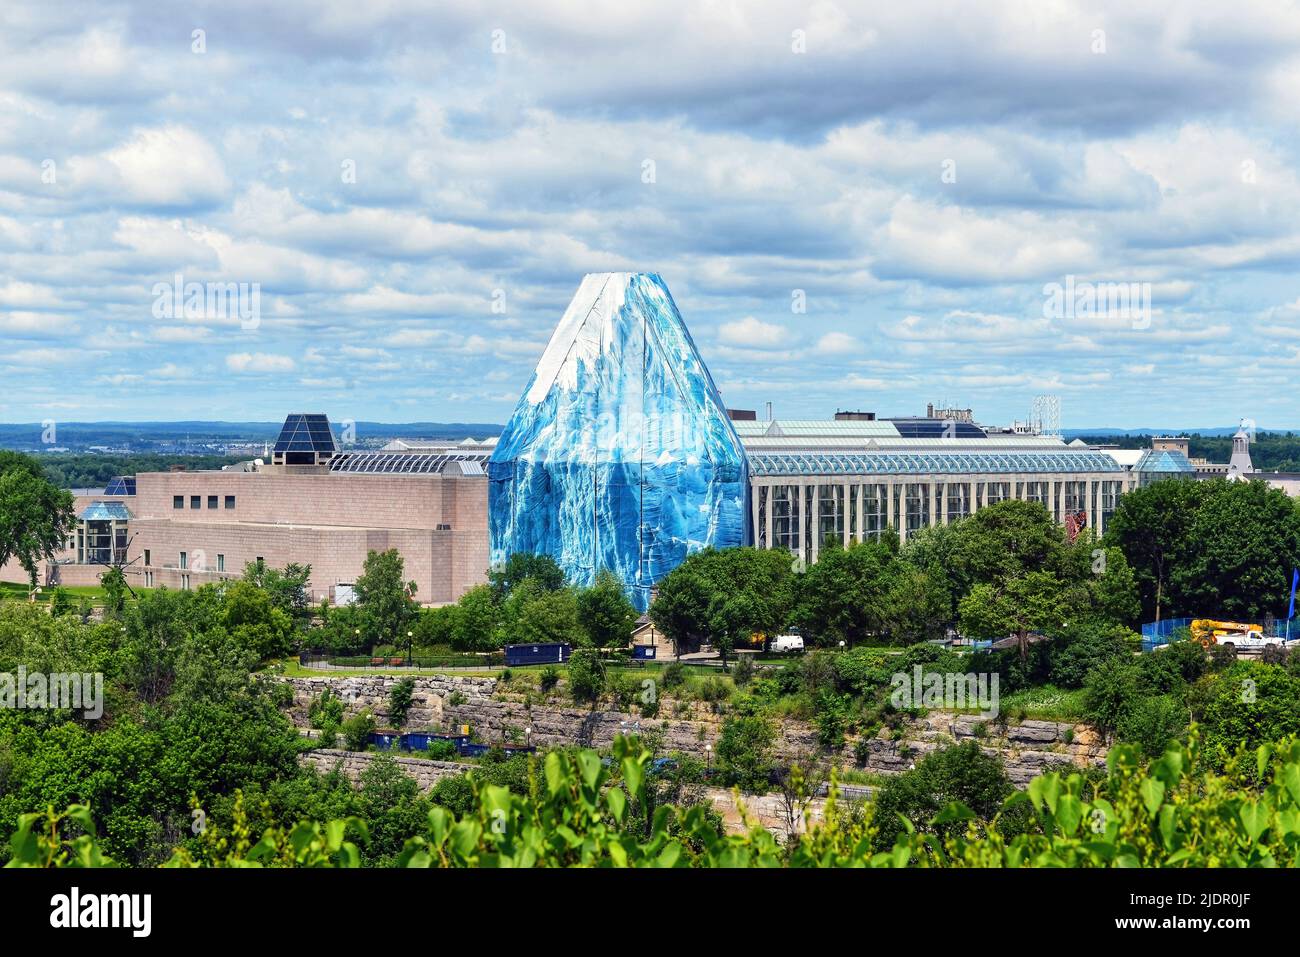 Ottawa, Kanada - 30. Juni 2013: Die National Gallery of Canada mit der dreistufigen Glaskuppel, die vorübergehend von einem Bild eines Eisbergs bedeckt ist Stockfoto